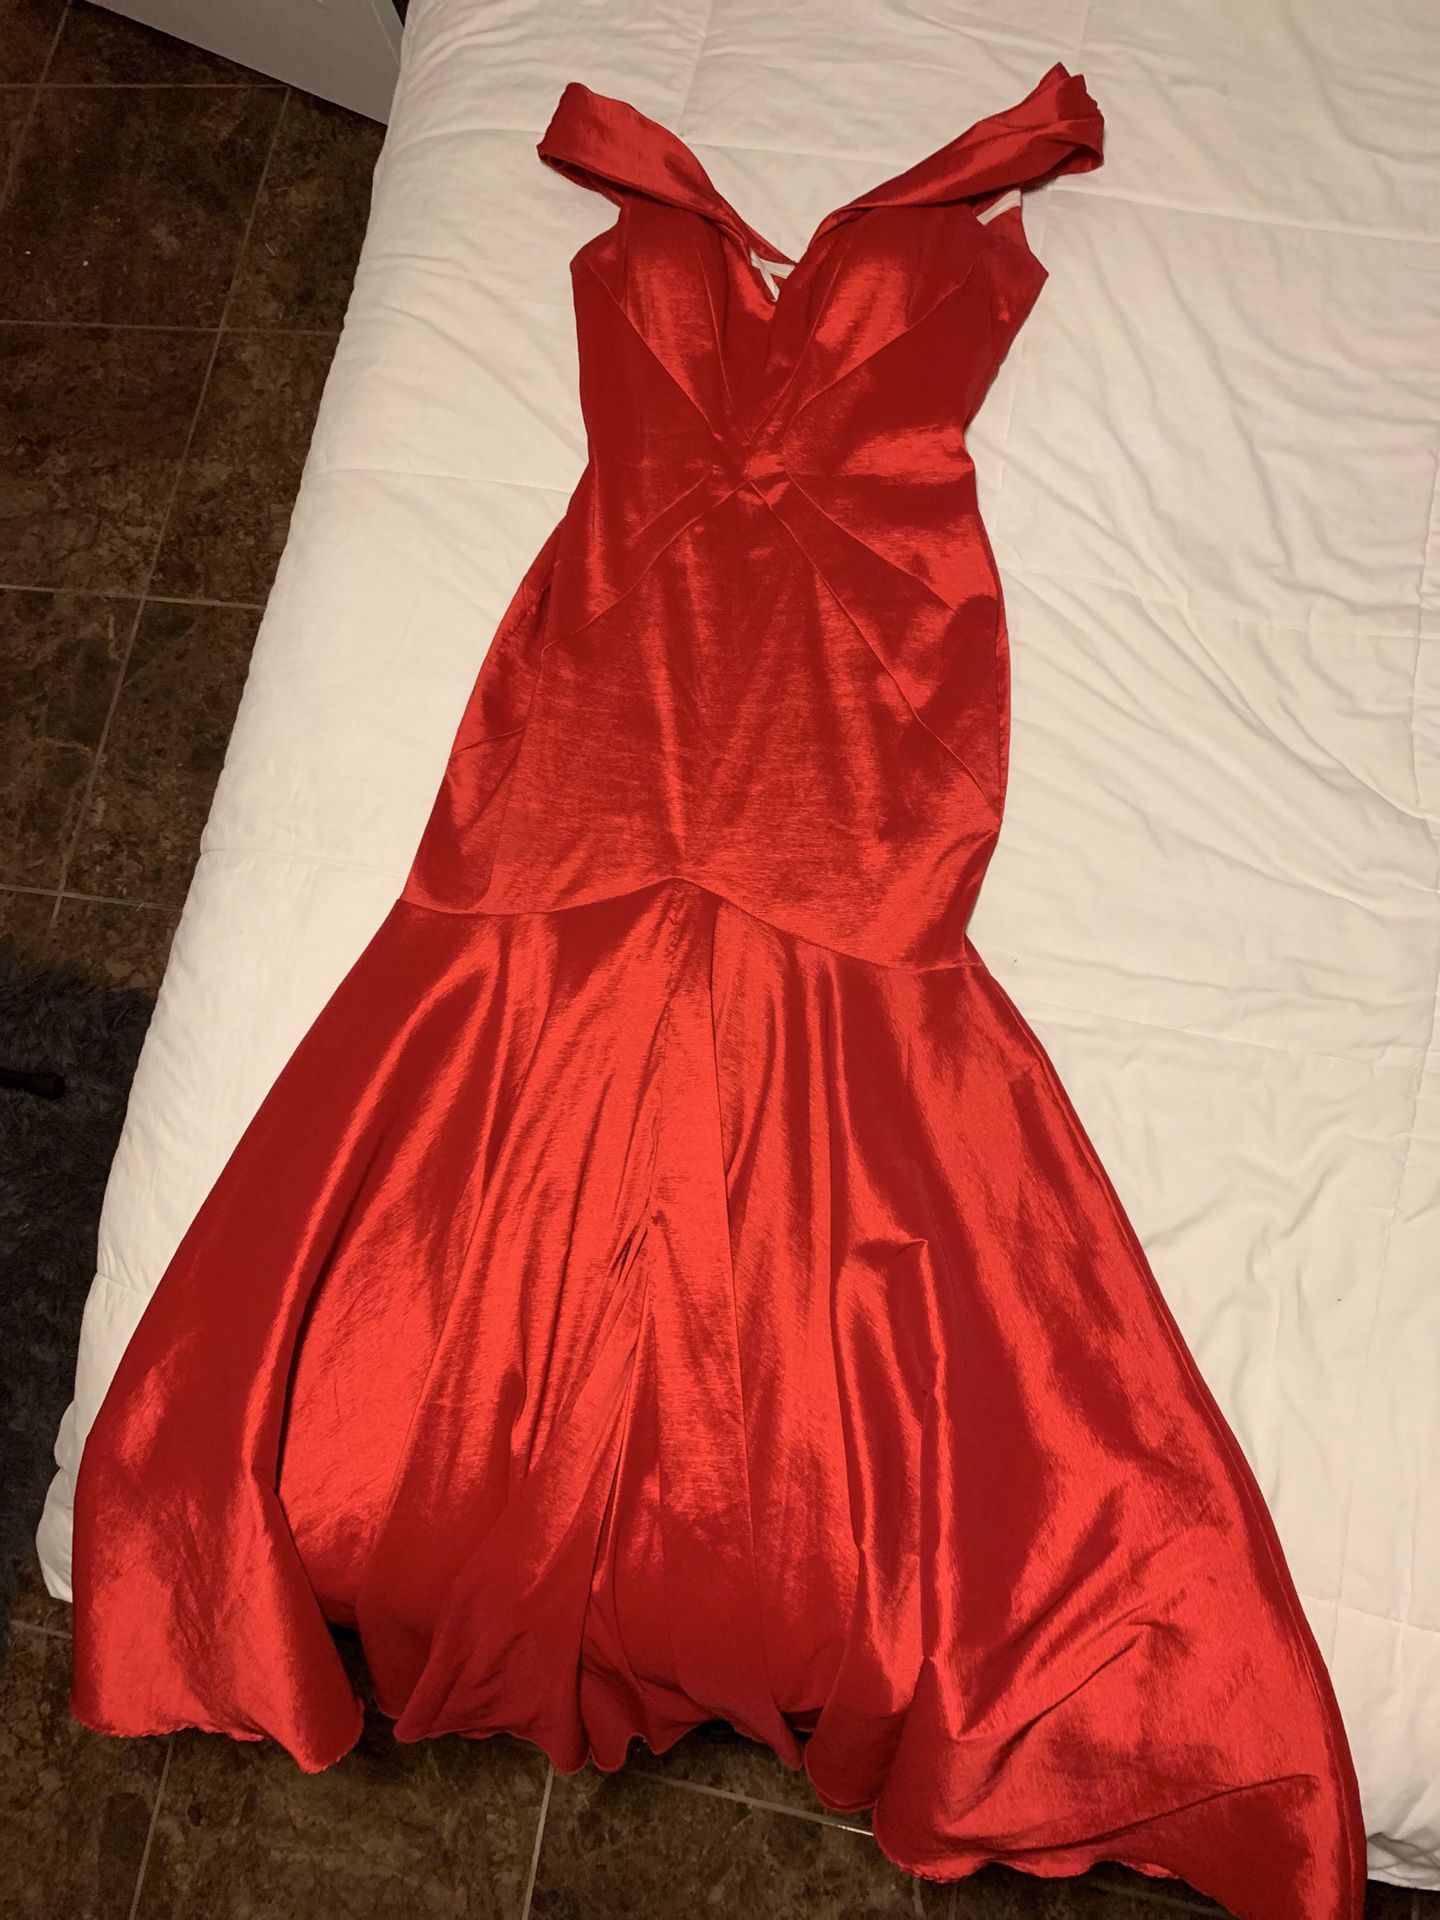 Red mermaid dress